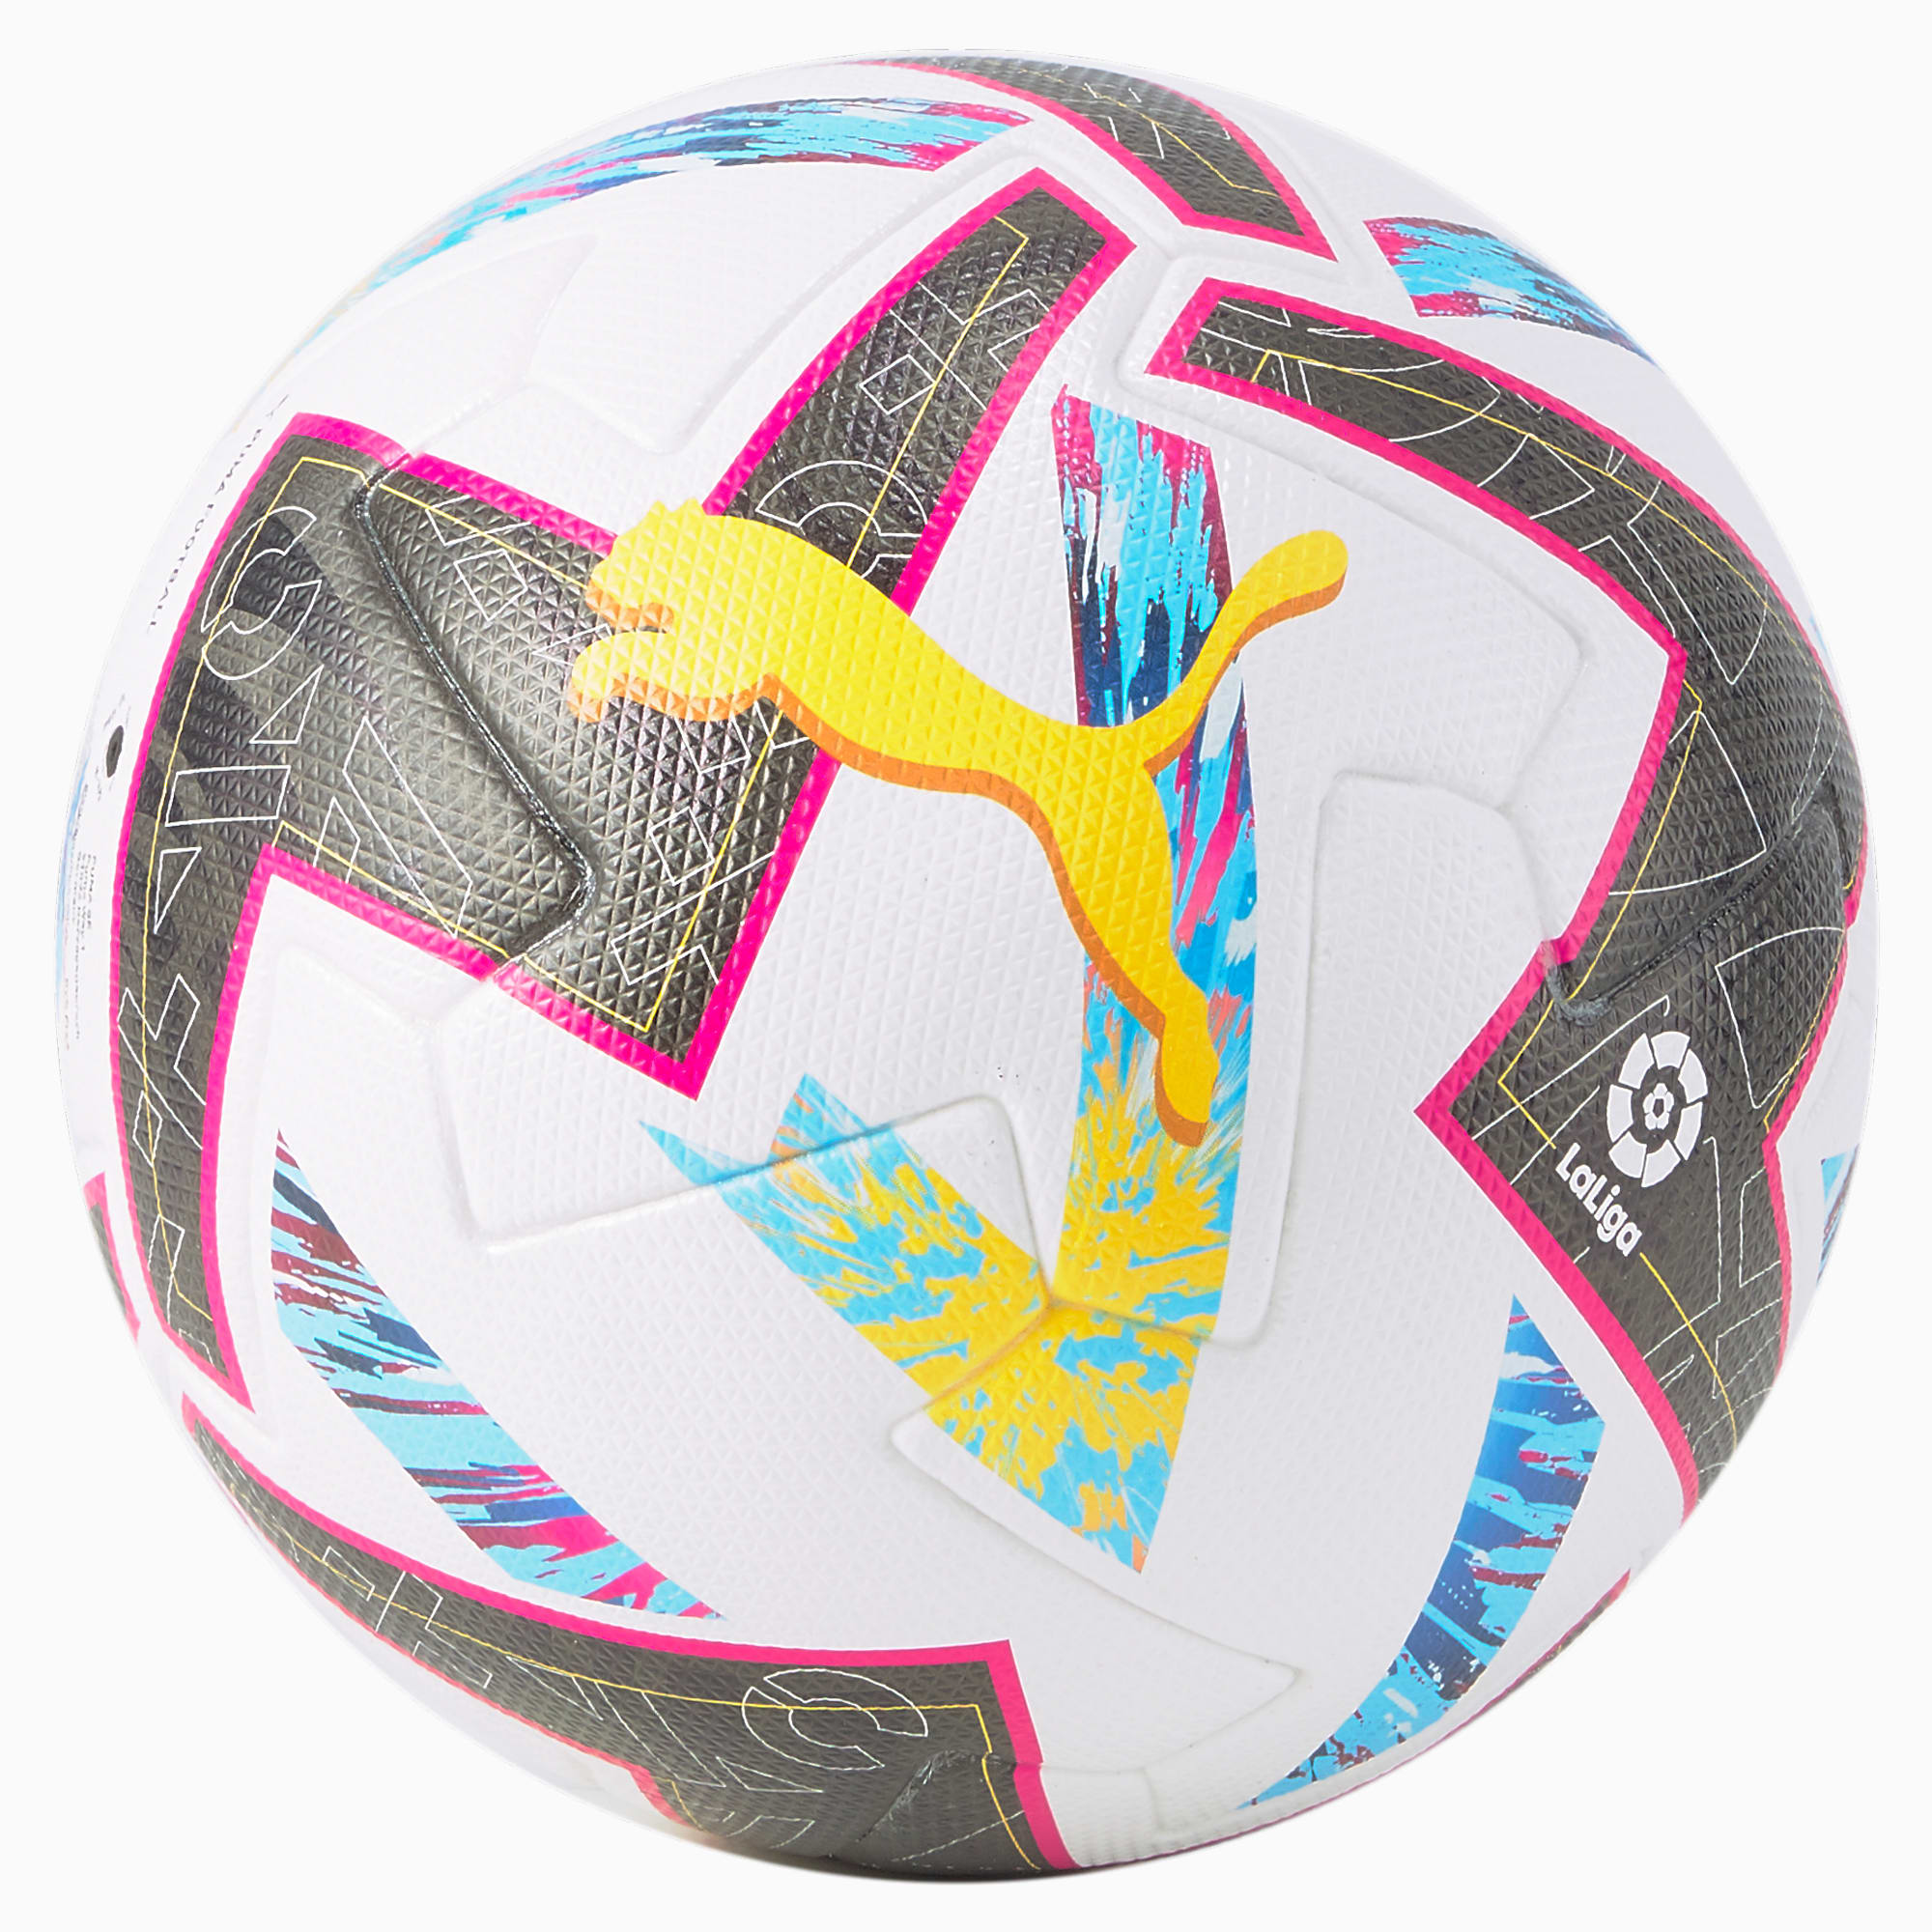 PUMA Orbita La Liga 1 FIFA Pro Match Fußball Für Damen, Lila/Blau/Weiß, Größe: 5, Accessoires